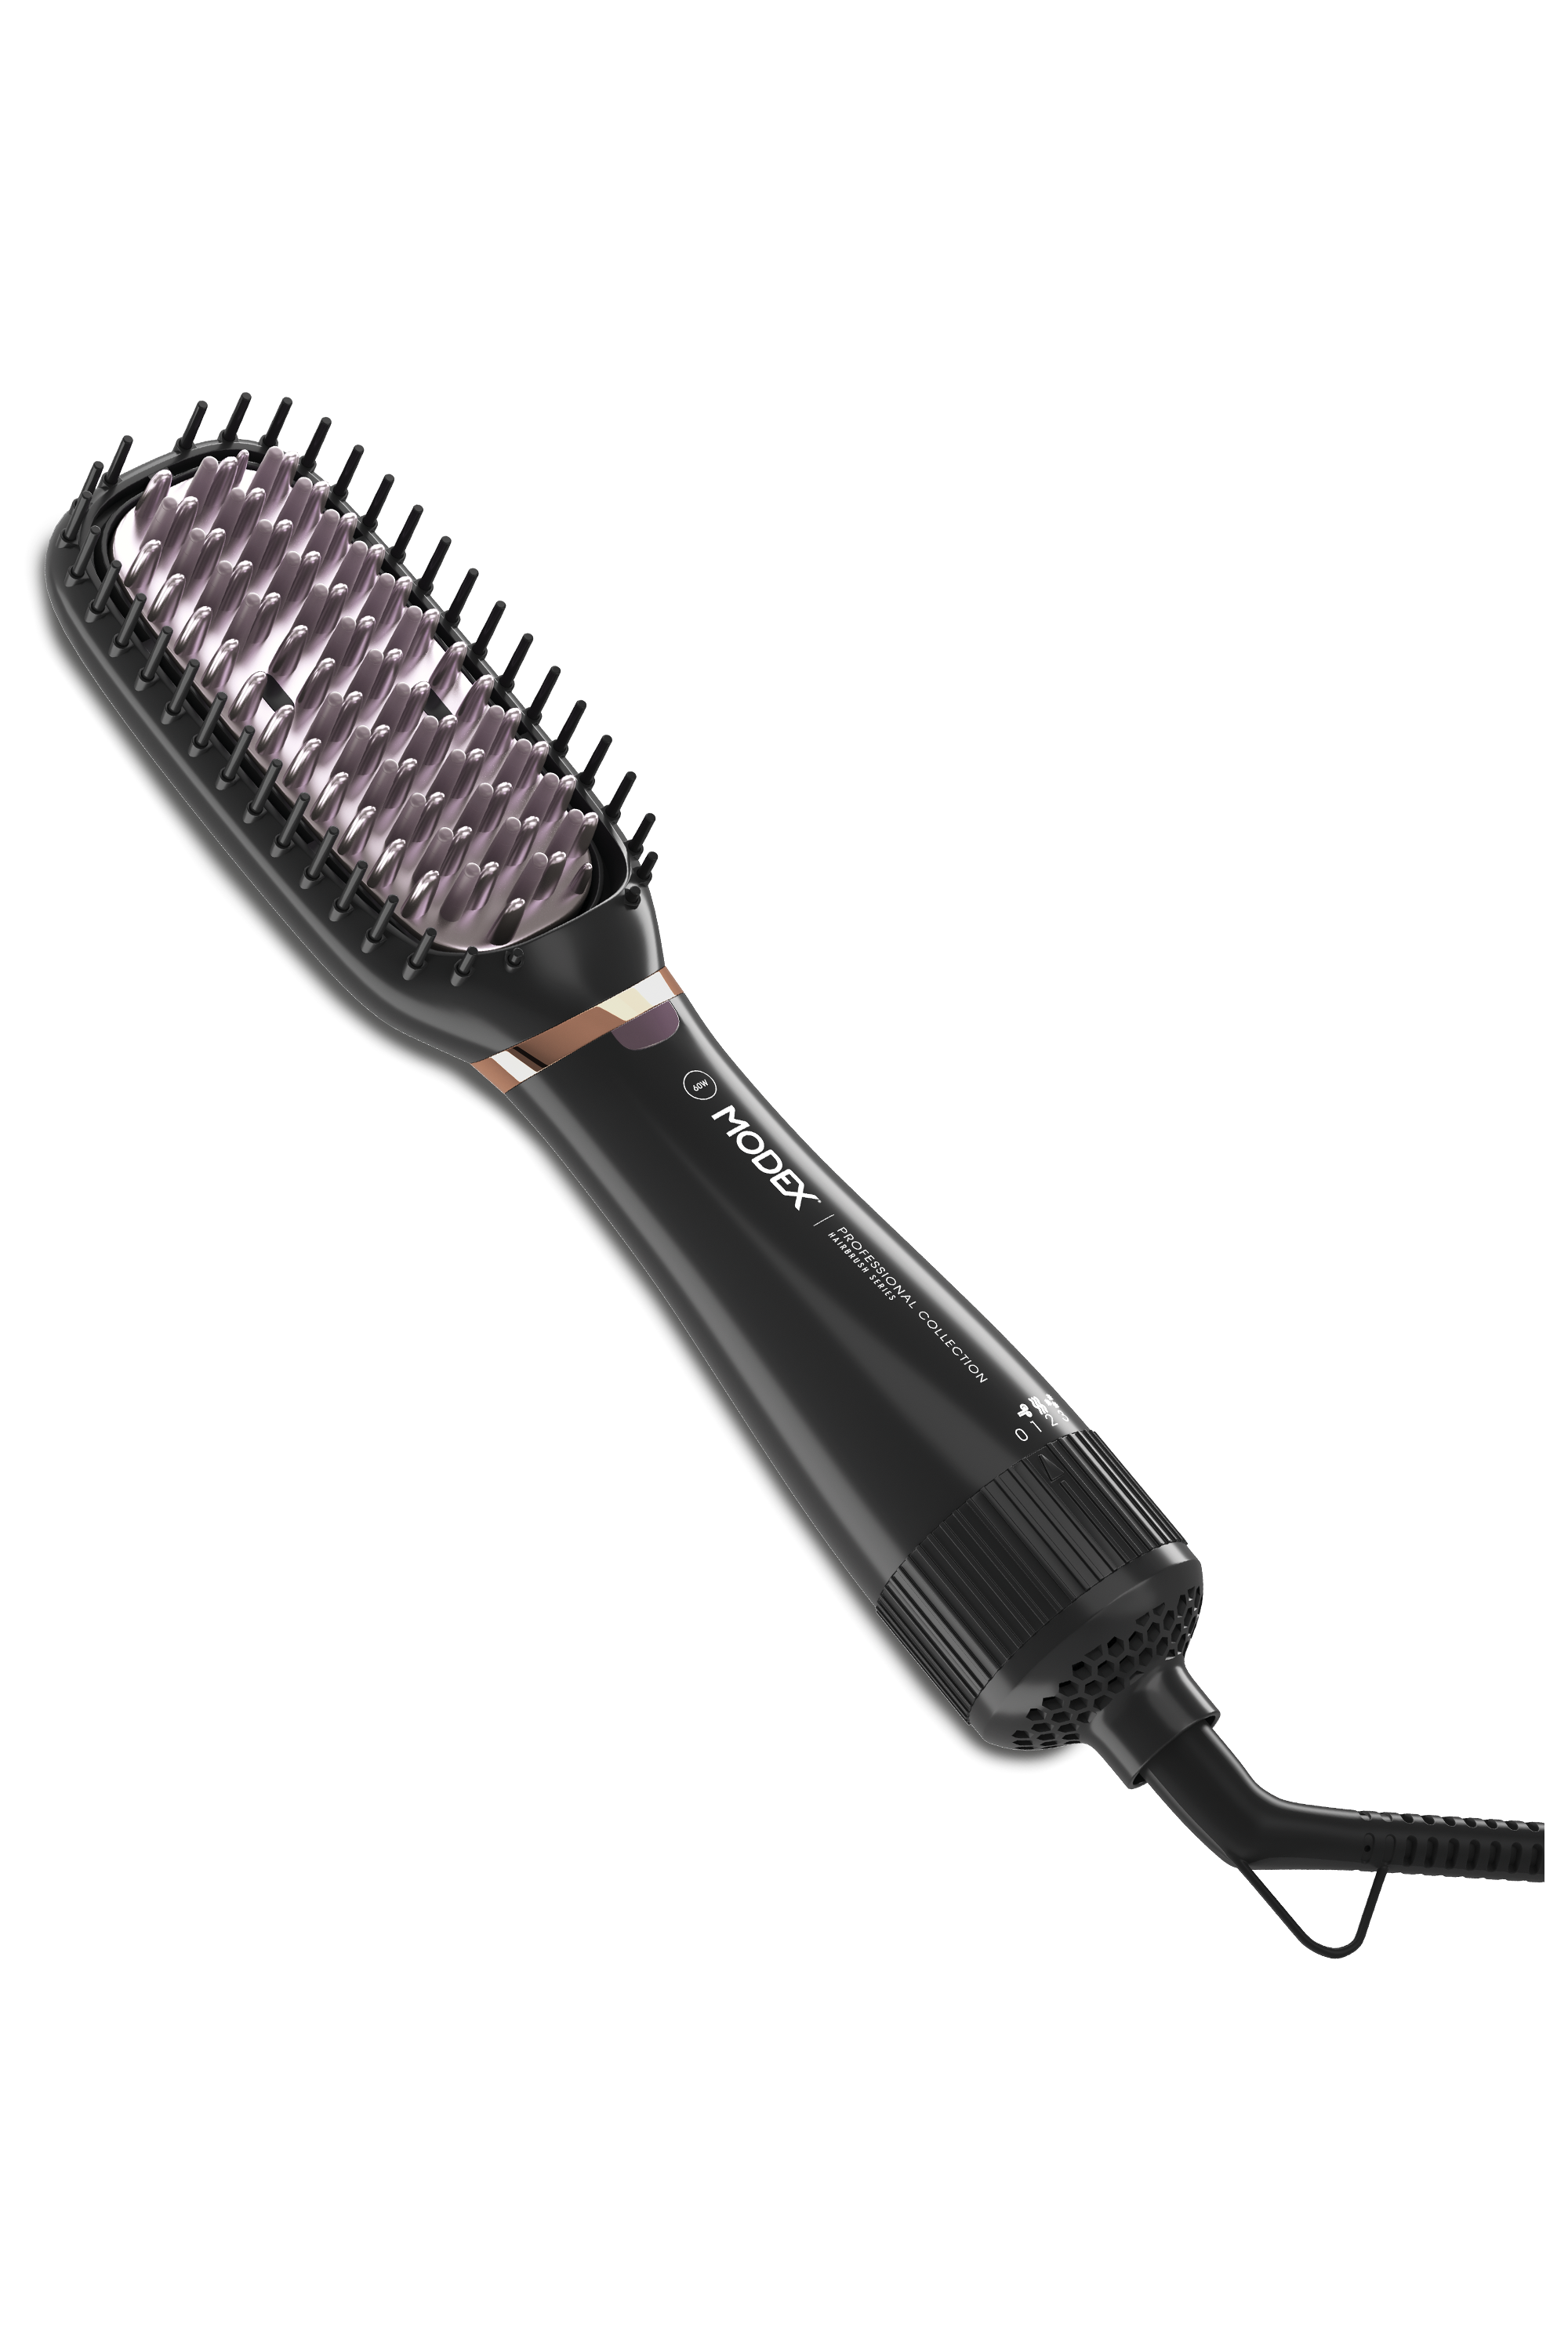 Hbr 1392 Hair Brush